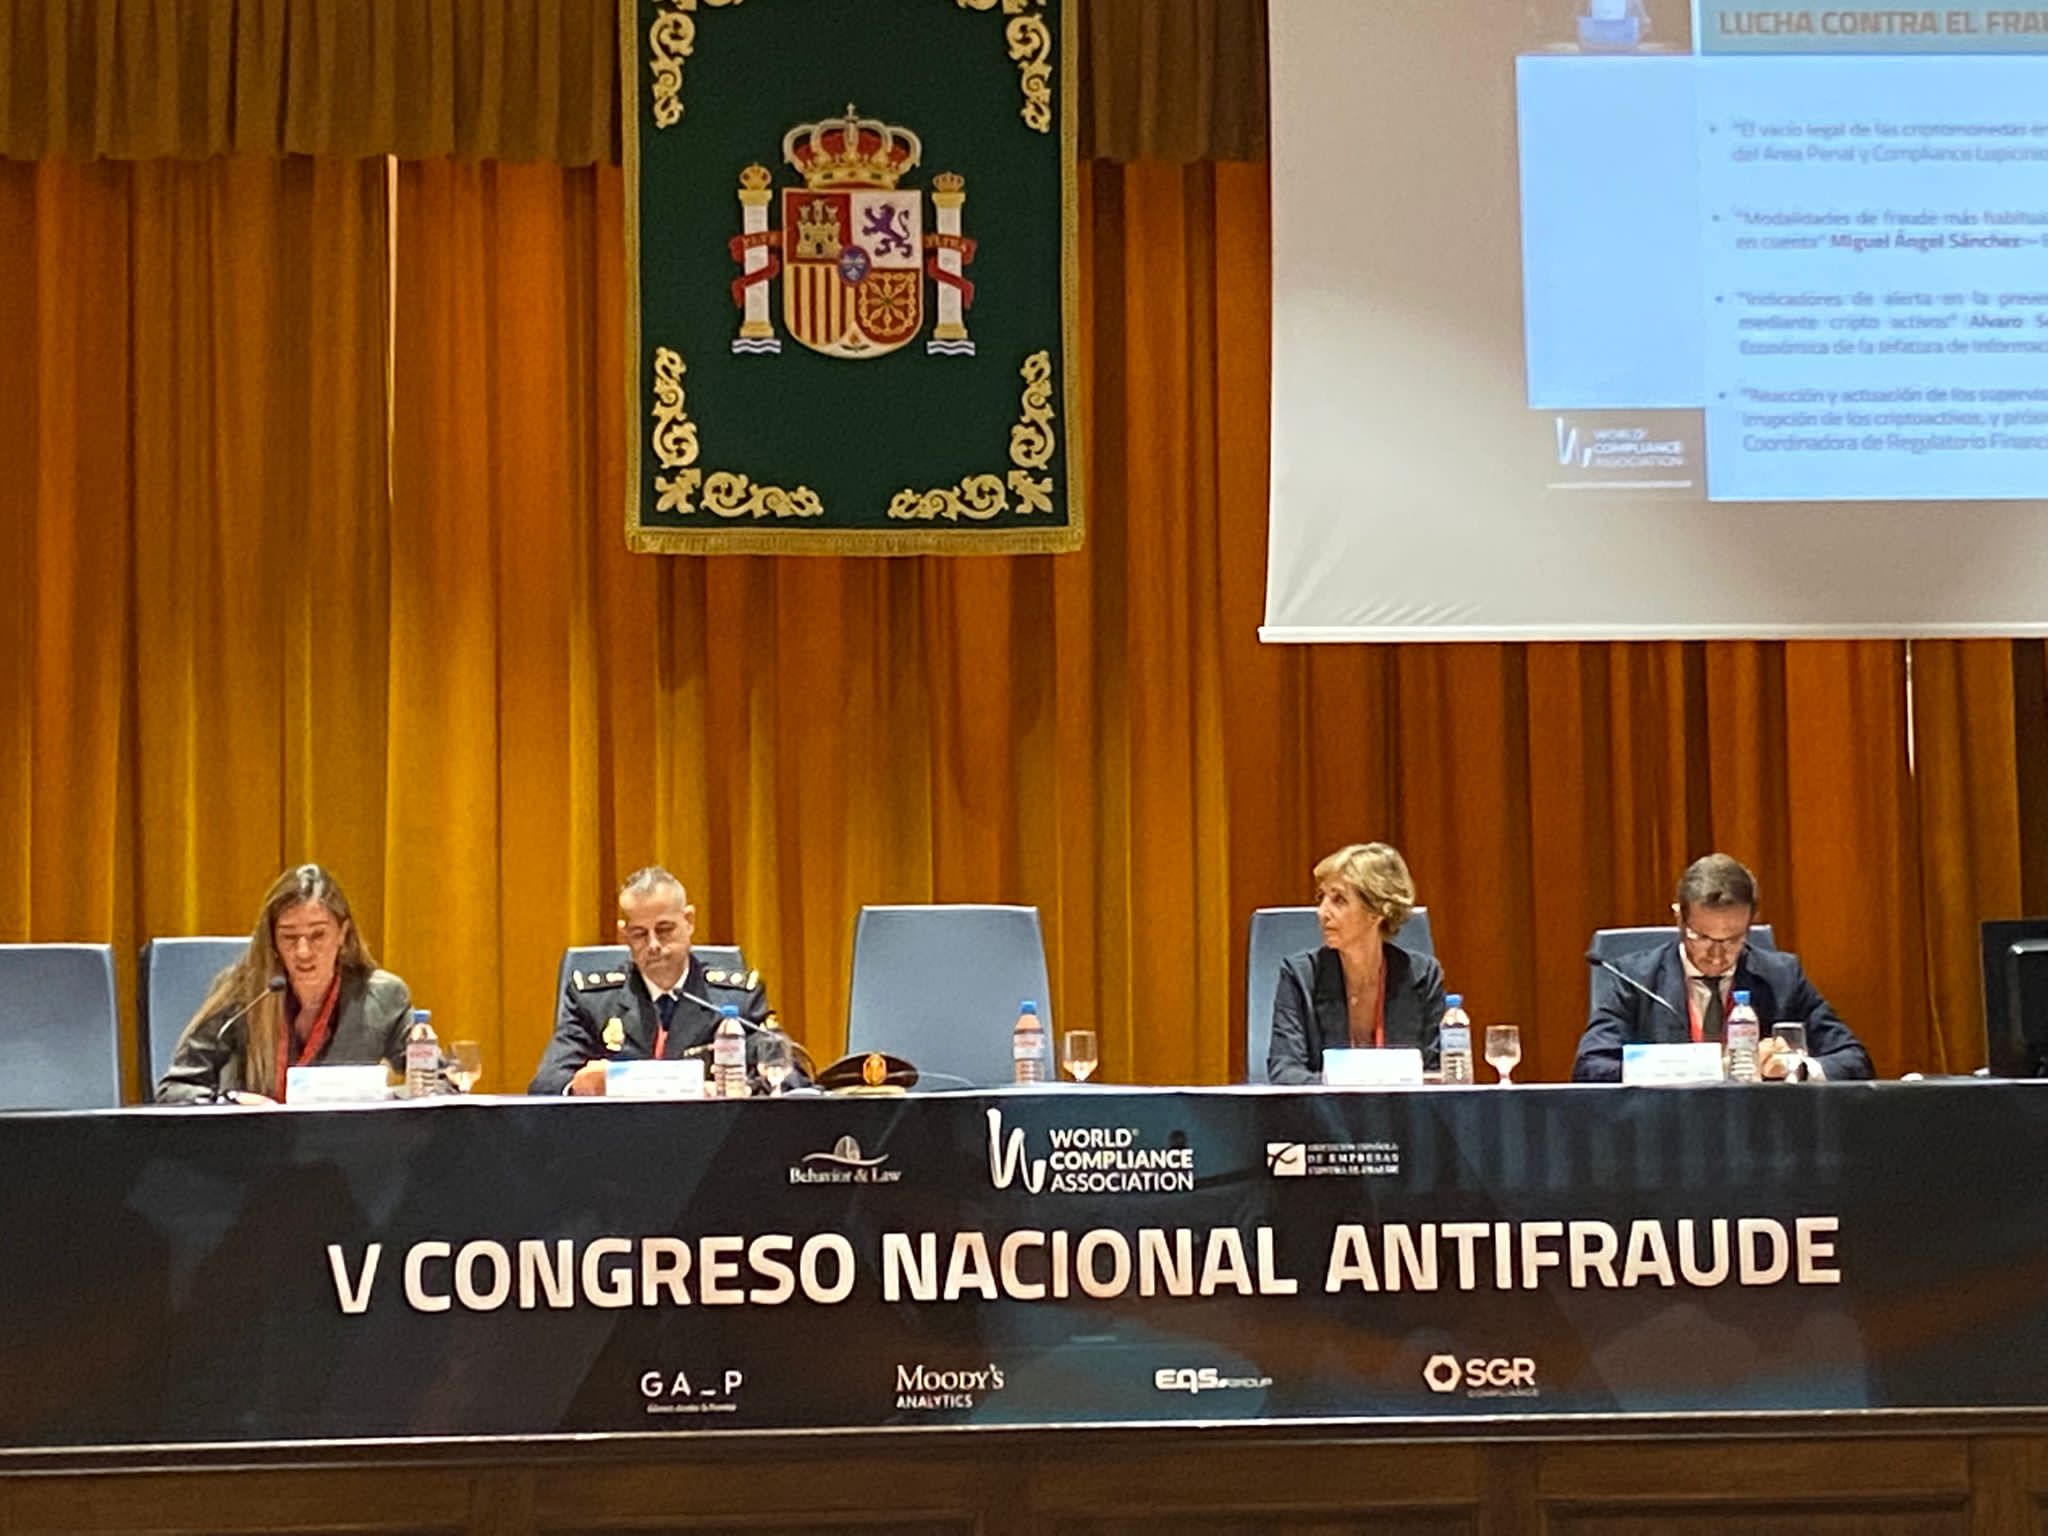 Conferencia sobre ciberseguridad en España